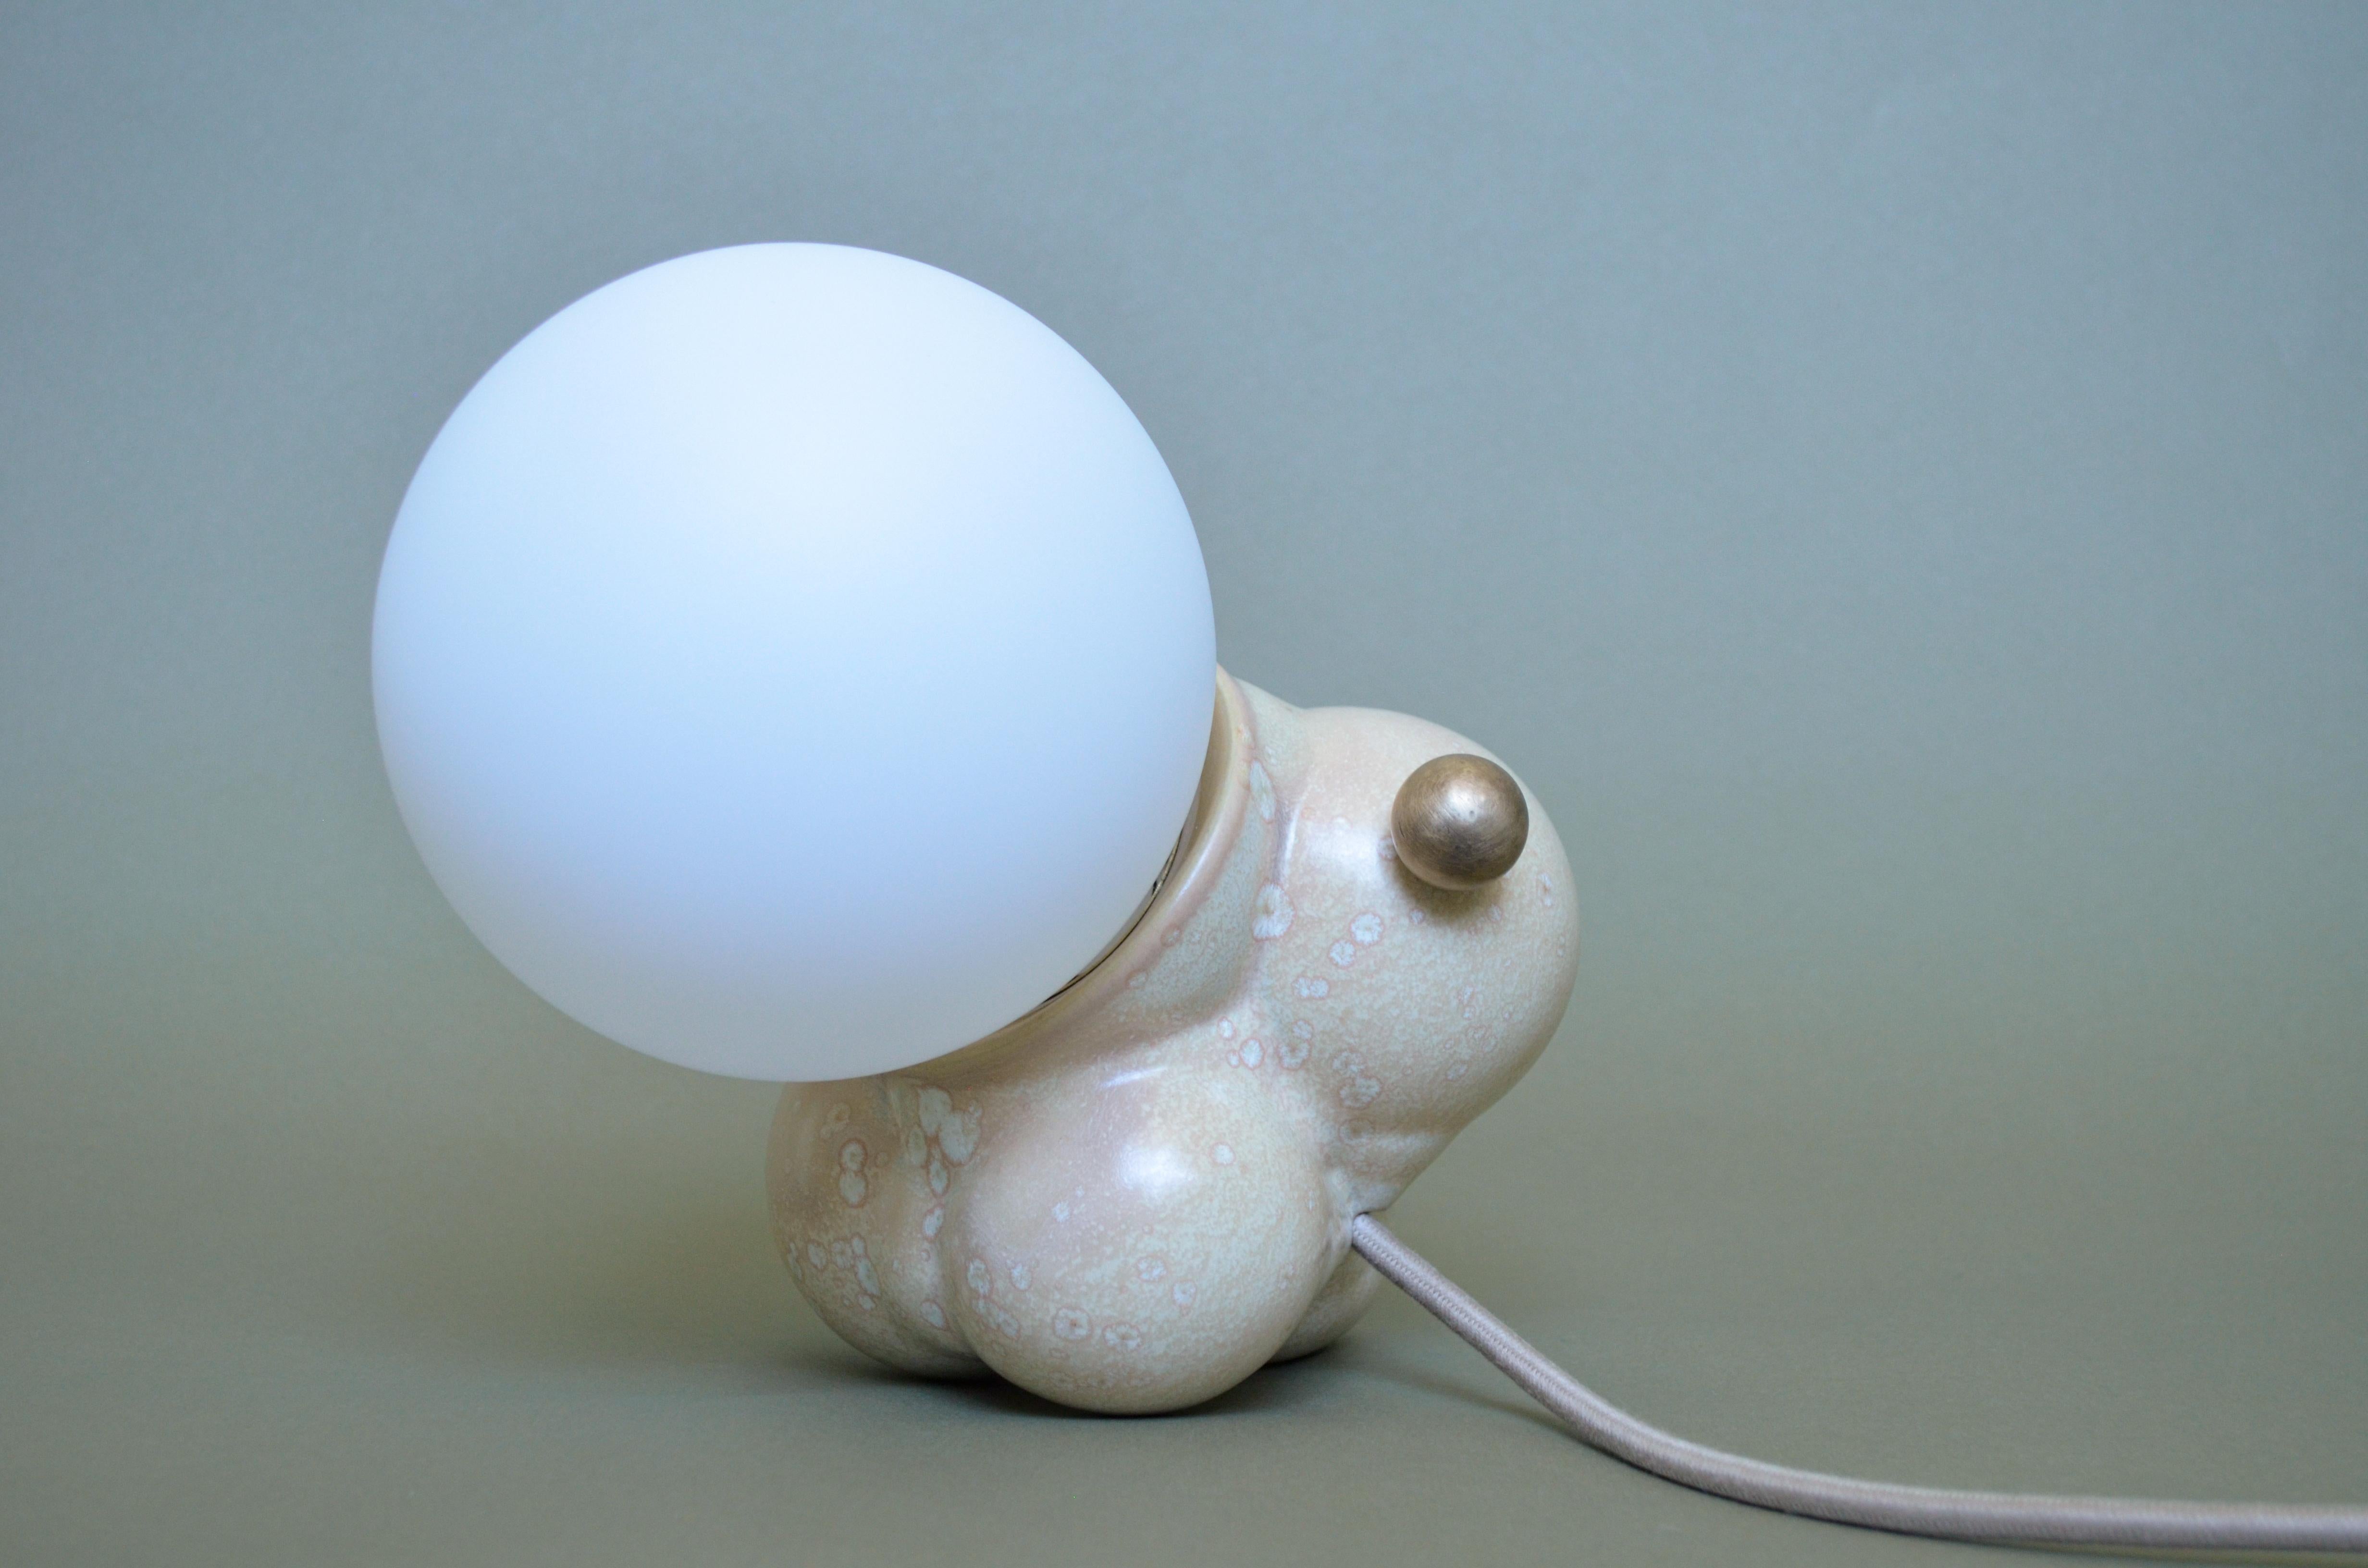 Unsere Bubbly Lamp Mini wird digital gezüchtet, um das fraktale Wachstum der botryoiden Kristalle in der Nature nachzuahmen. Handgefertigt von Kunsthandwerkern in Peru mit einzigartigen kundenspezifischen Glasuren, verfügt die Lampe über eine